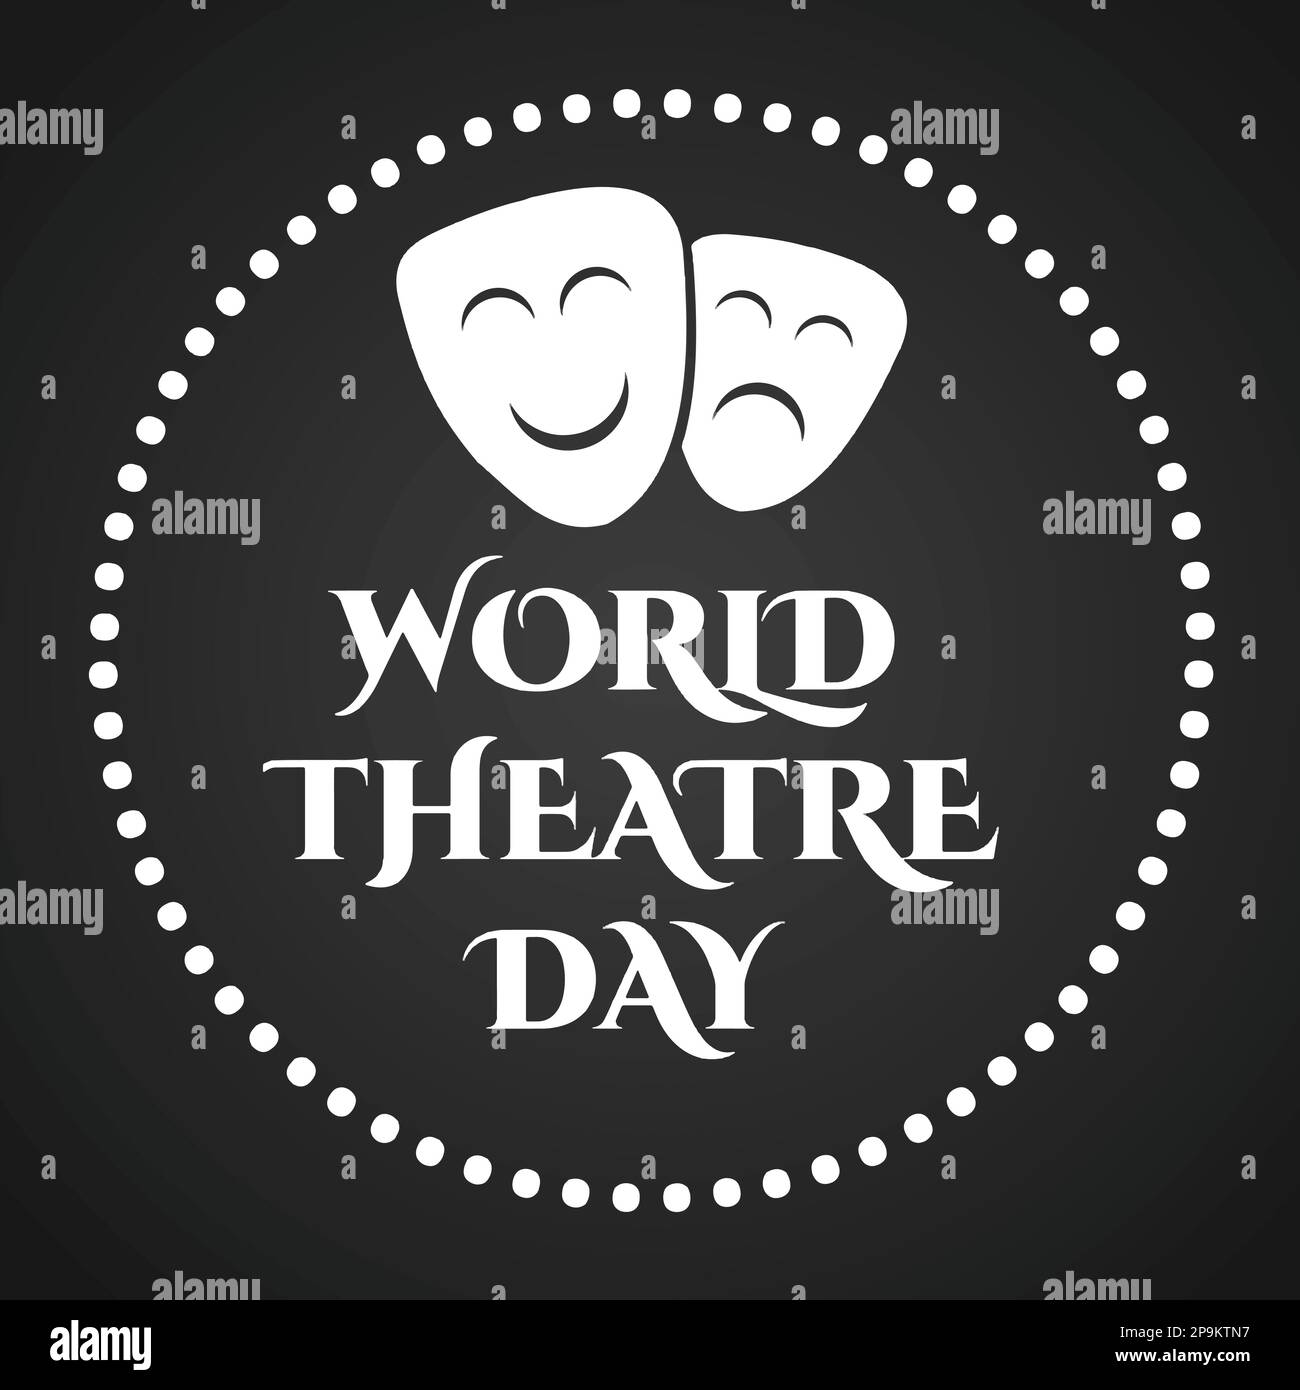 Scritta disegnata a mano per la Giornata Mondiale del Teatro. Elemento di design per poster, scheda, banner, volantino. Illustrazione vettoriale. Illustrazione Vettoriale